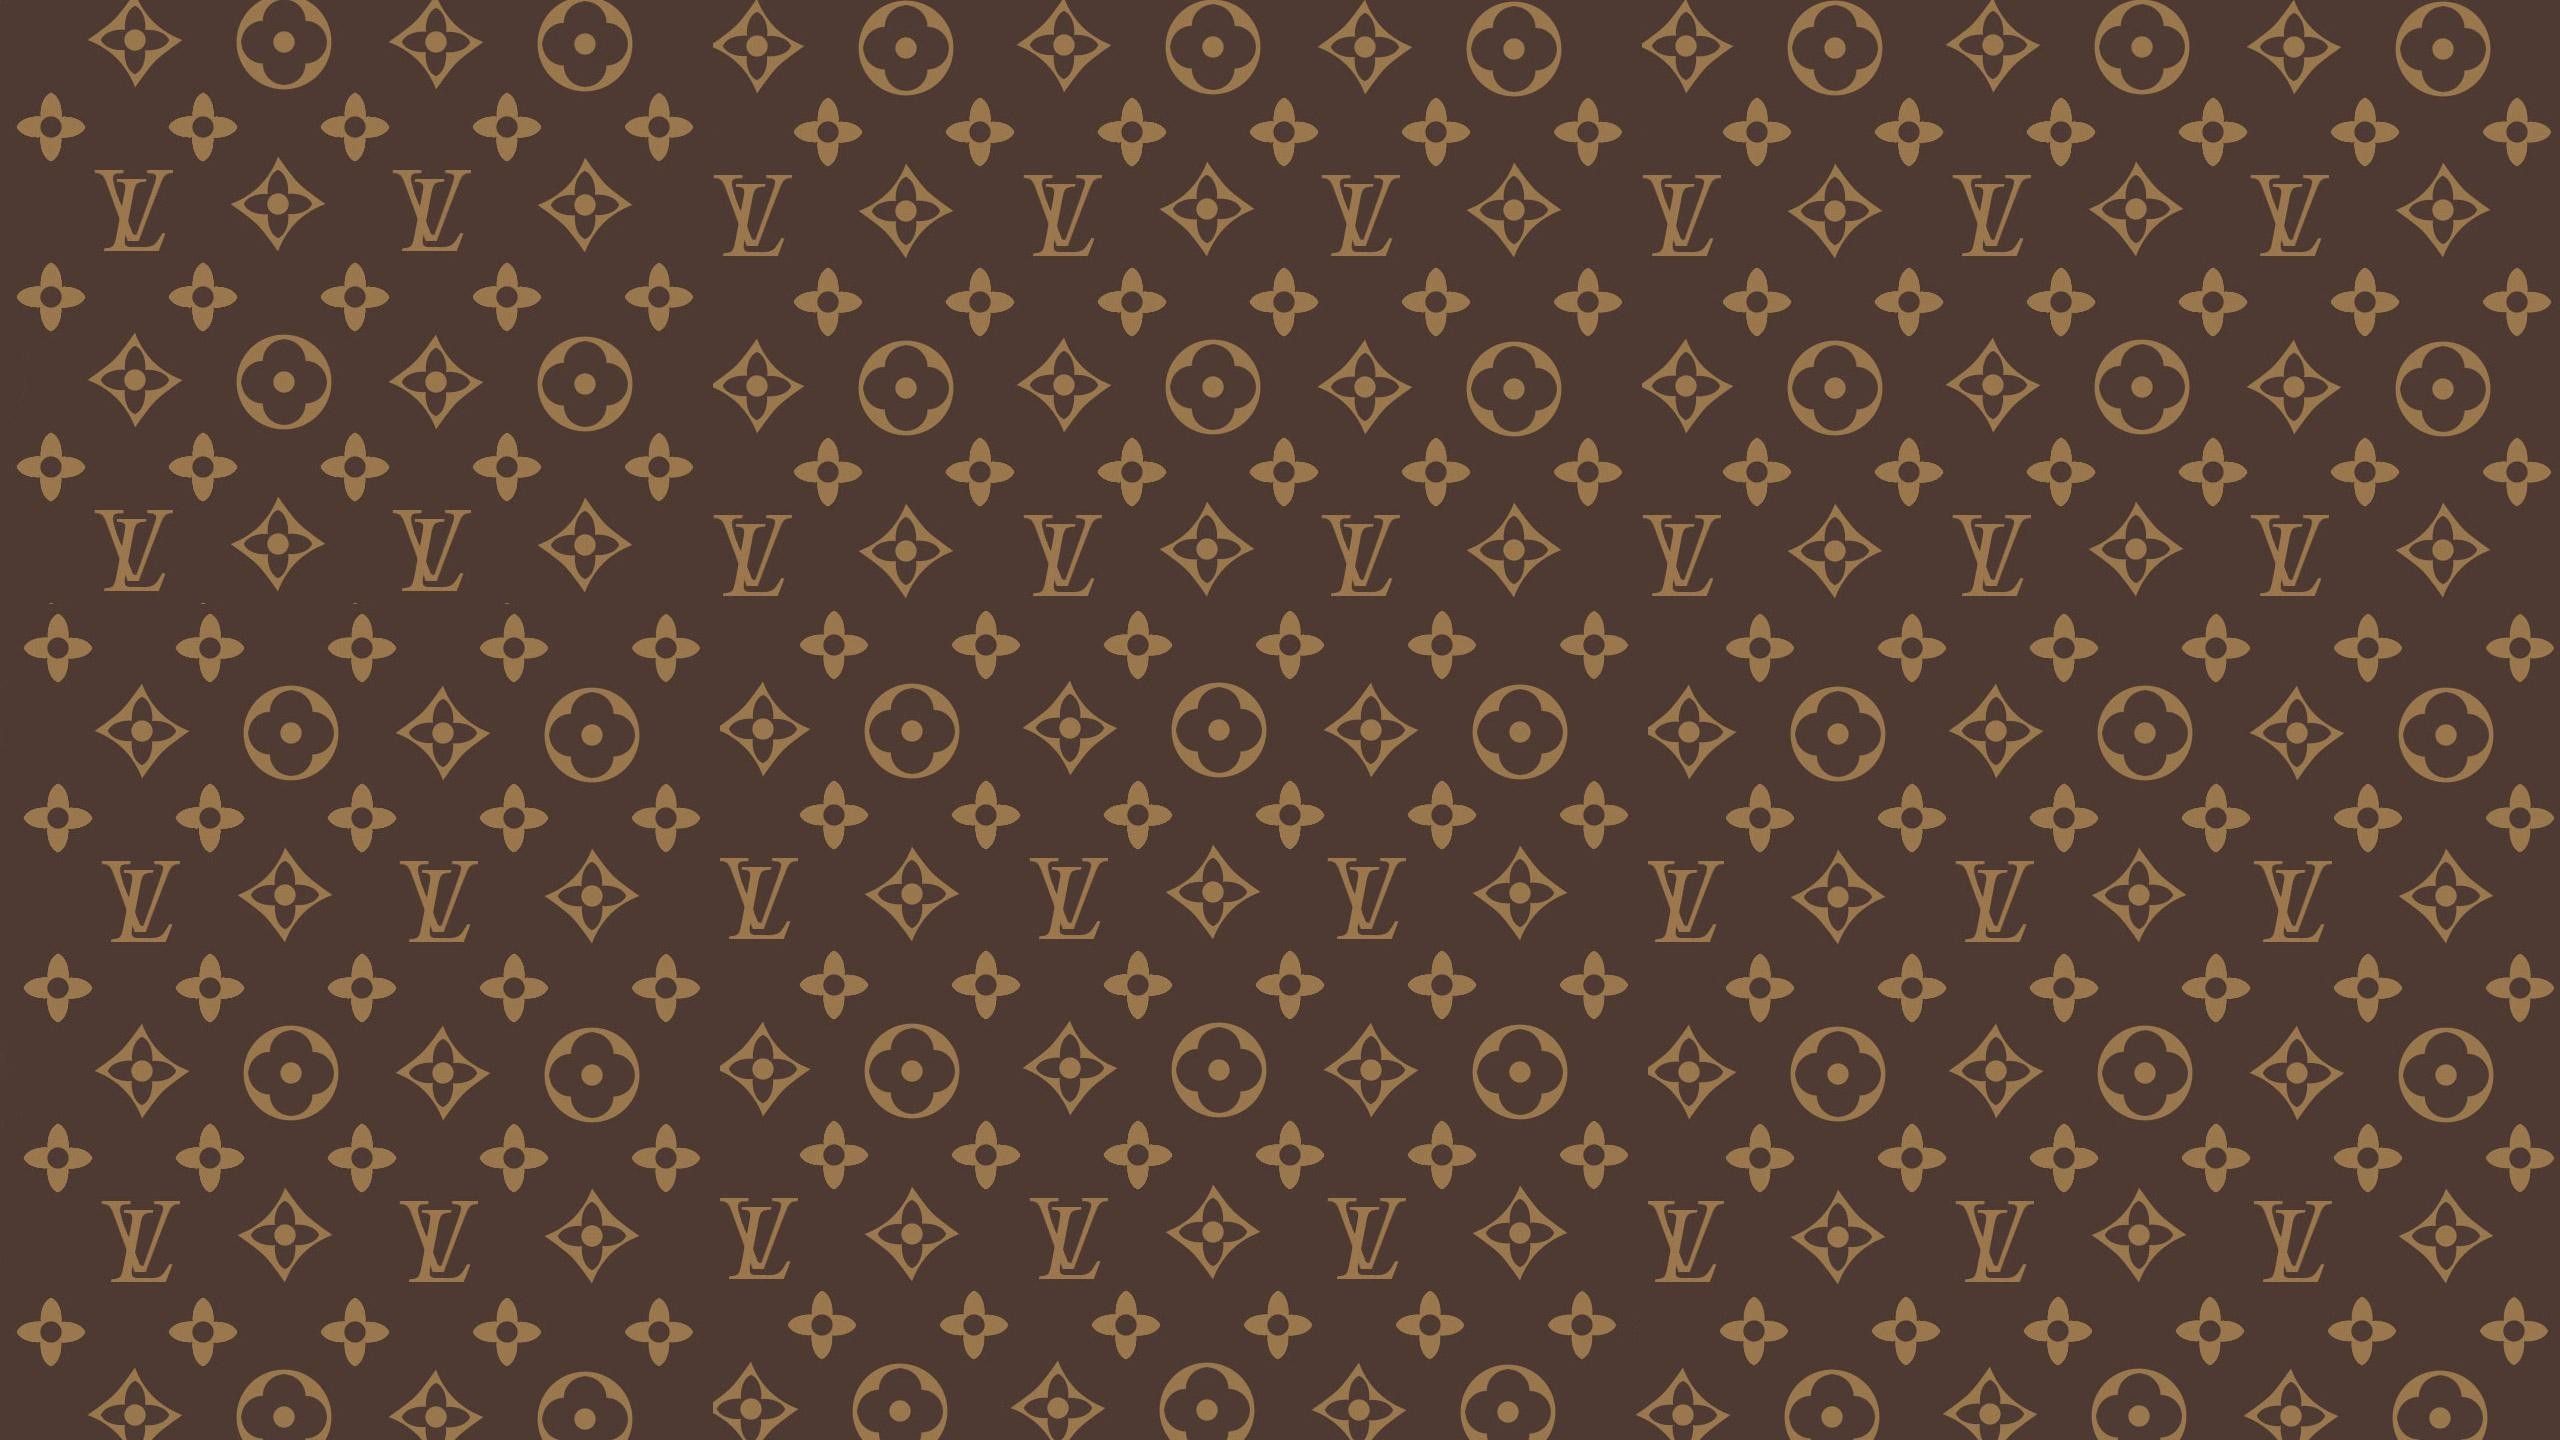 A brown and tan Louis Vuitton pattern - Louis Vuitton